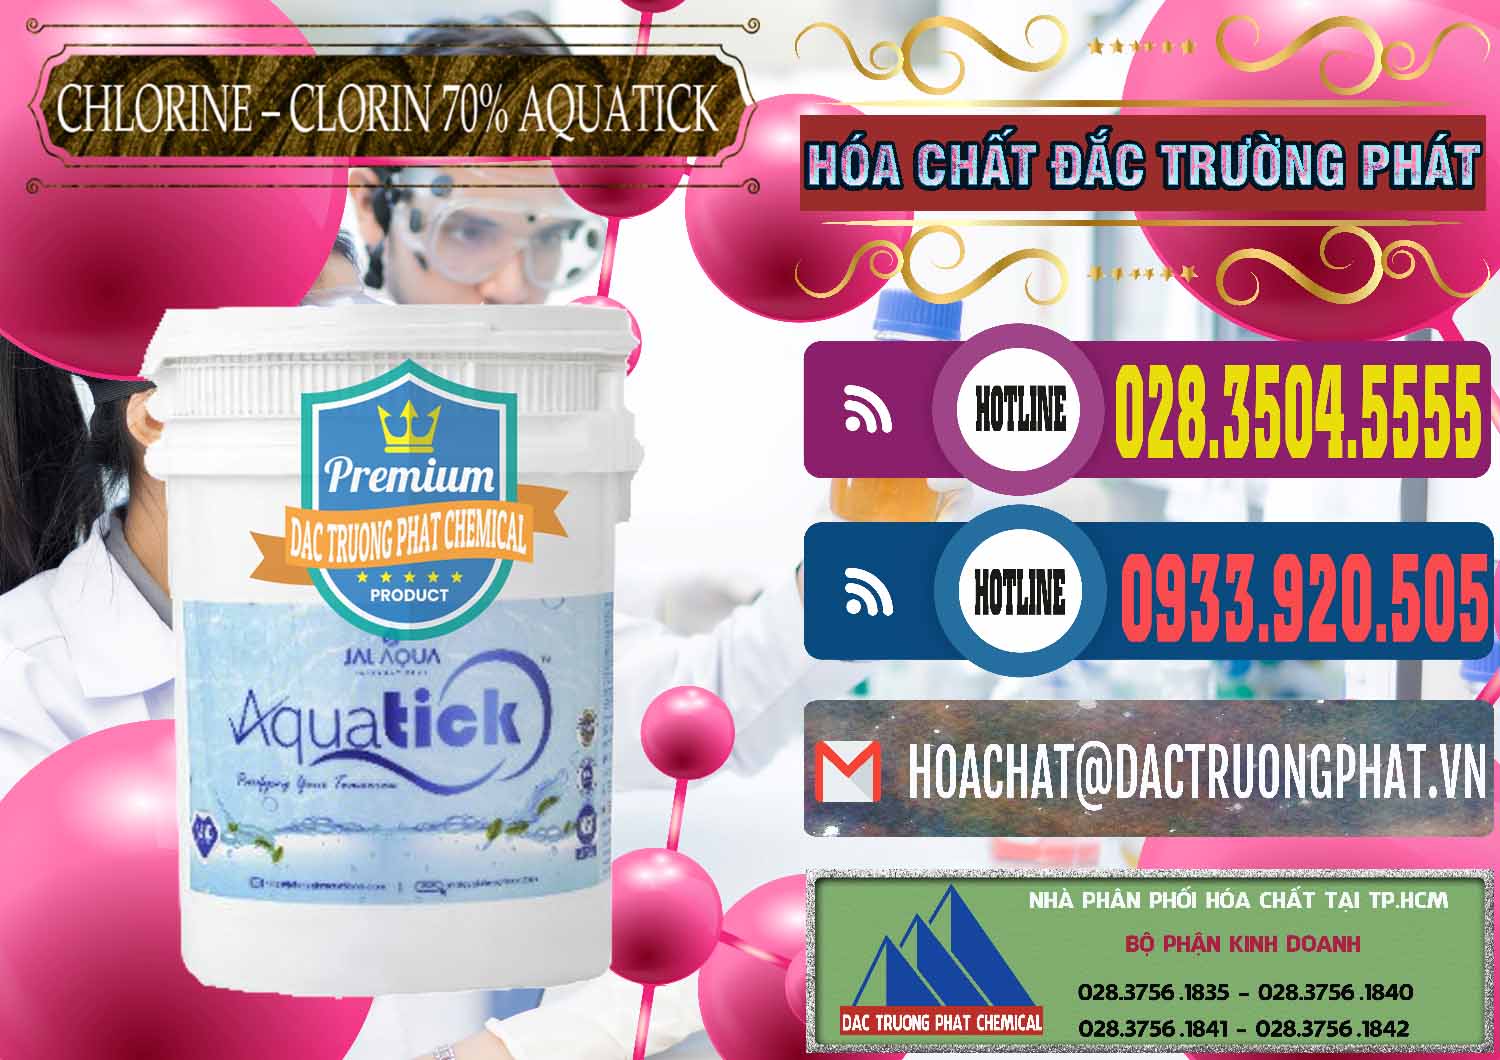 Nhà cung ứng & bán Chlorine – Clorin 70% Aquatick Thùng Cao Jal Aqua Ấn Độ India - 0237 - Cty phân phối & bán hóa chất tại TP.HCM - muabanhoachat.com.vn